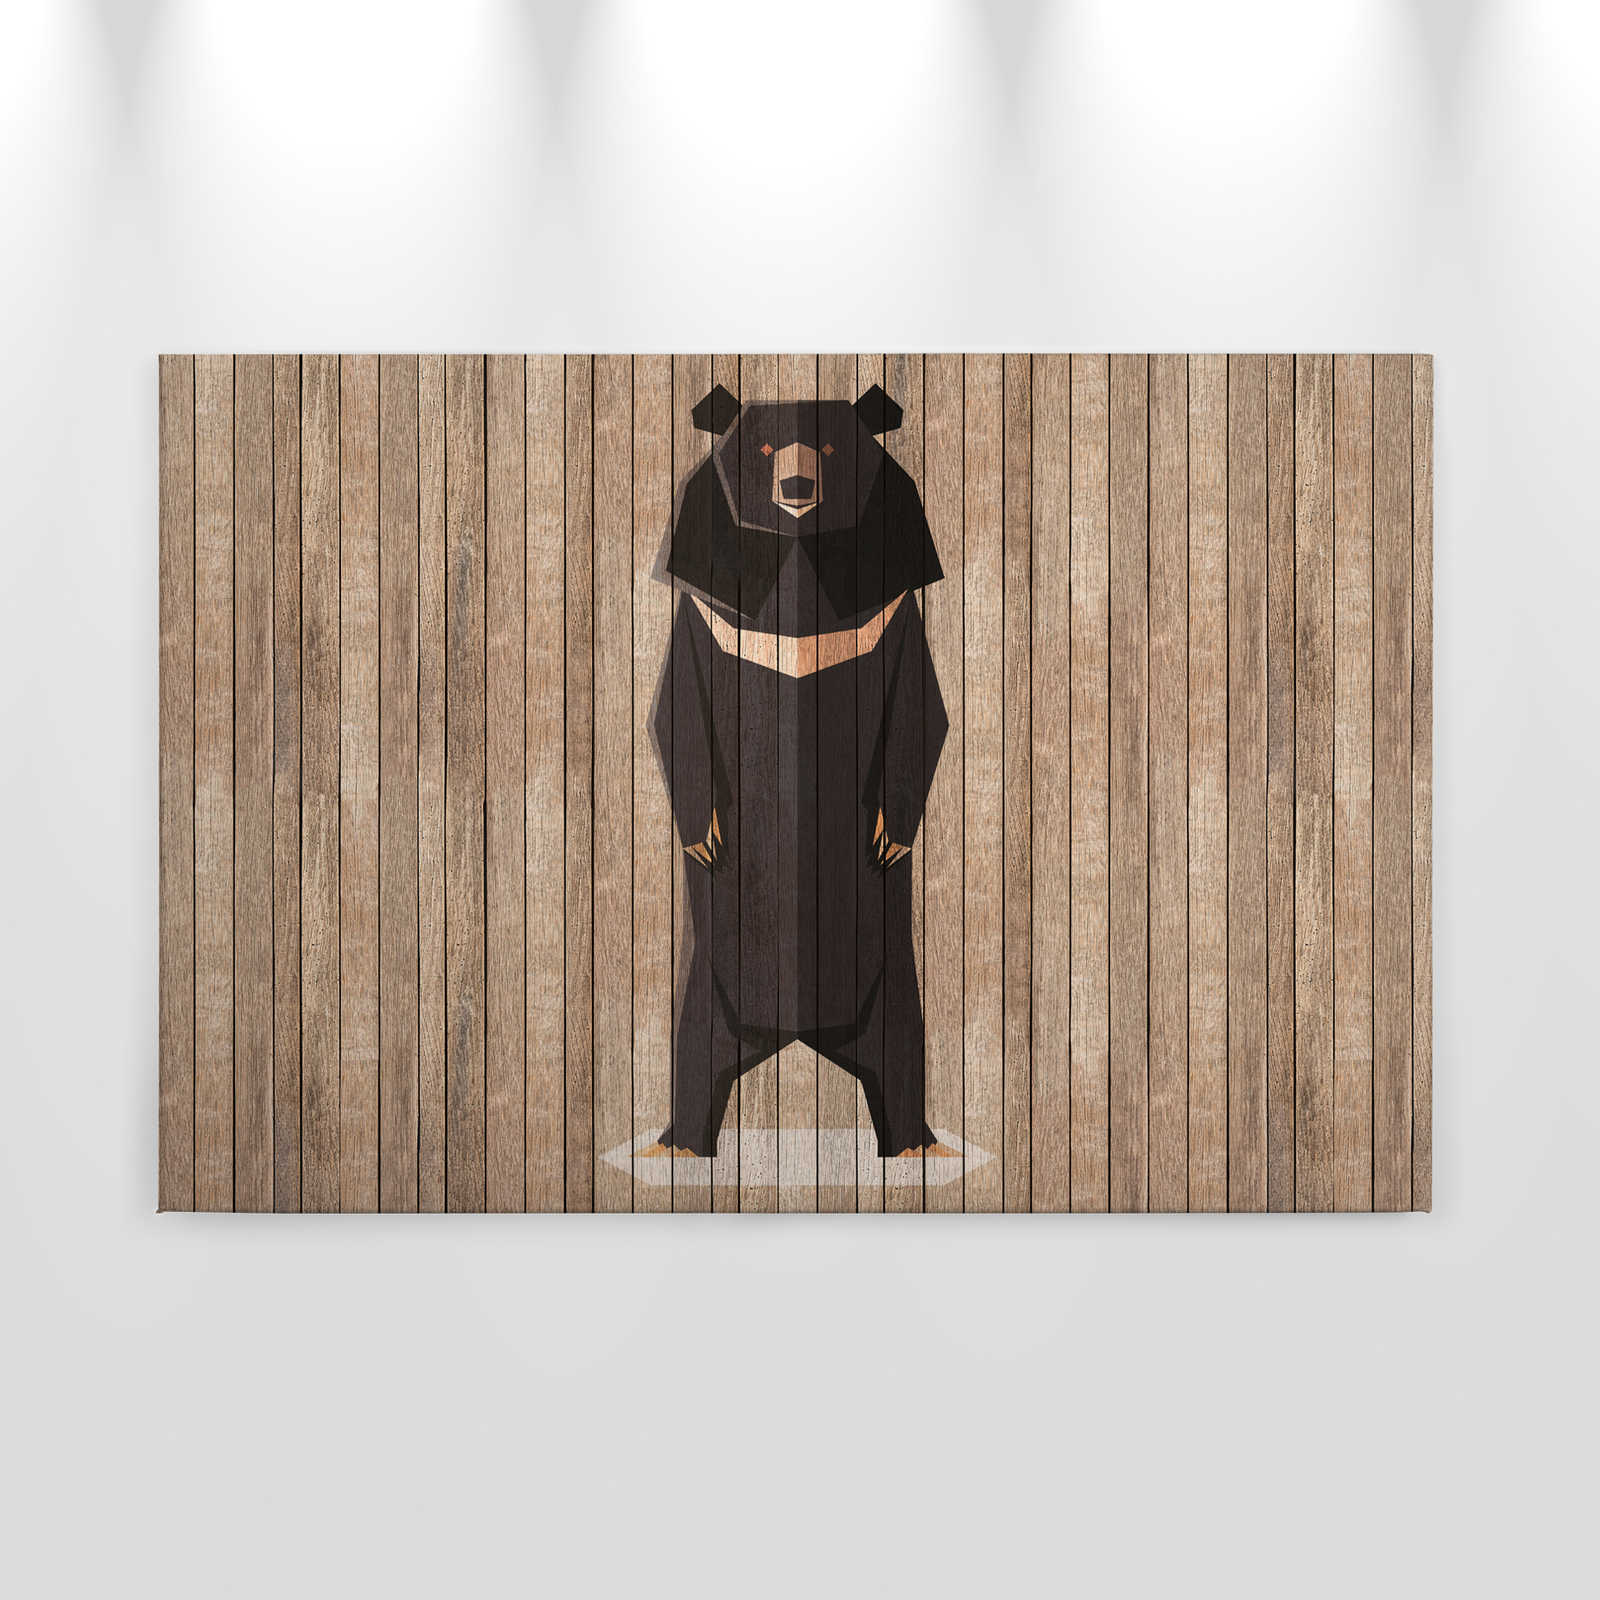             Born to Be Wild 1 - Leinwandbild Bretterwand mit Bären - Holzpaneele breit – 0,90 m x 0,60 m
        